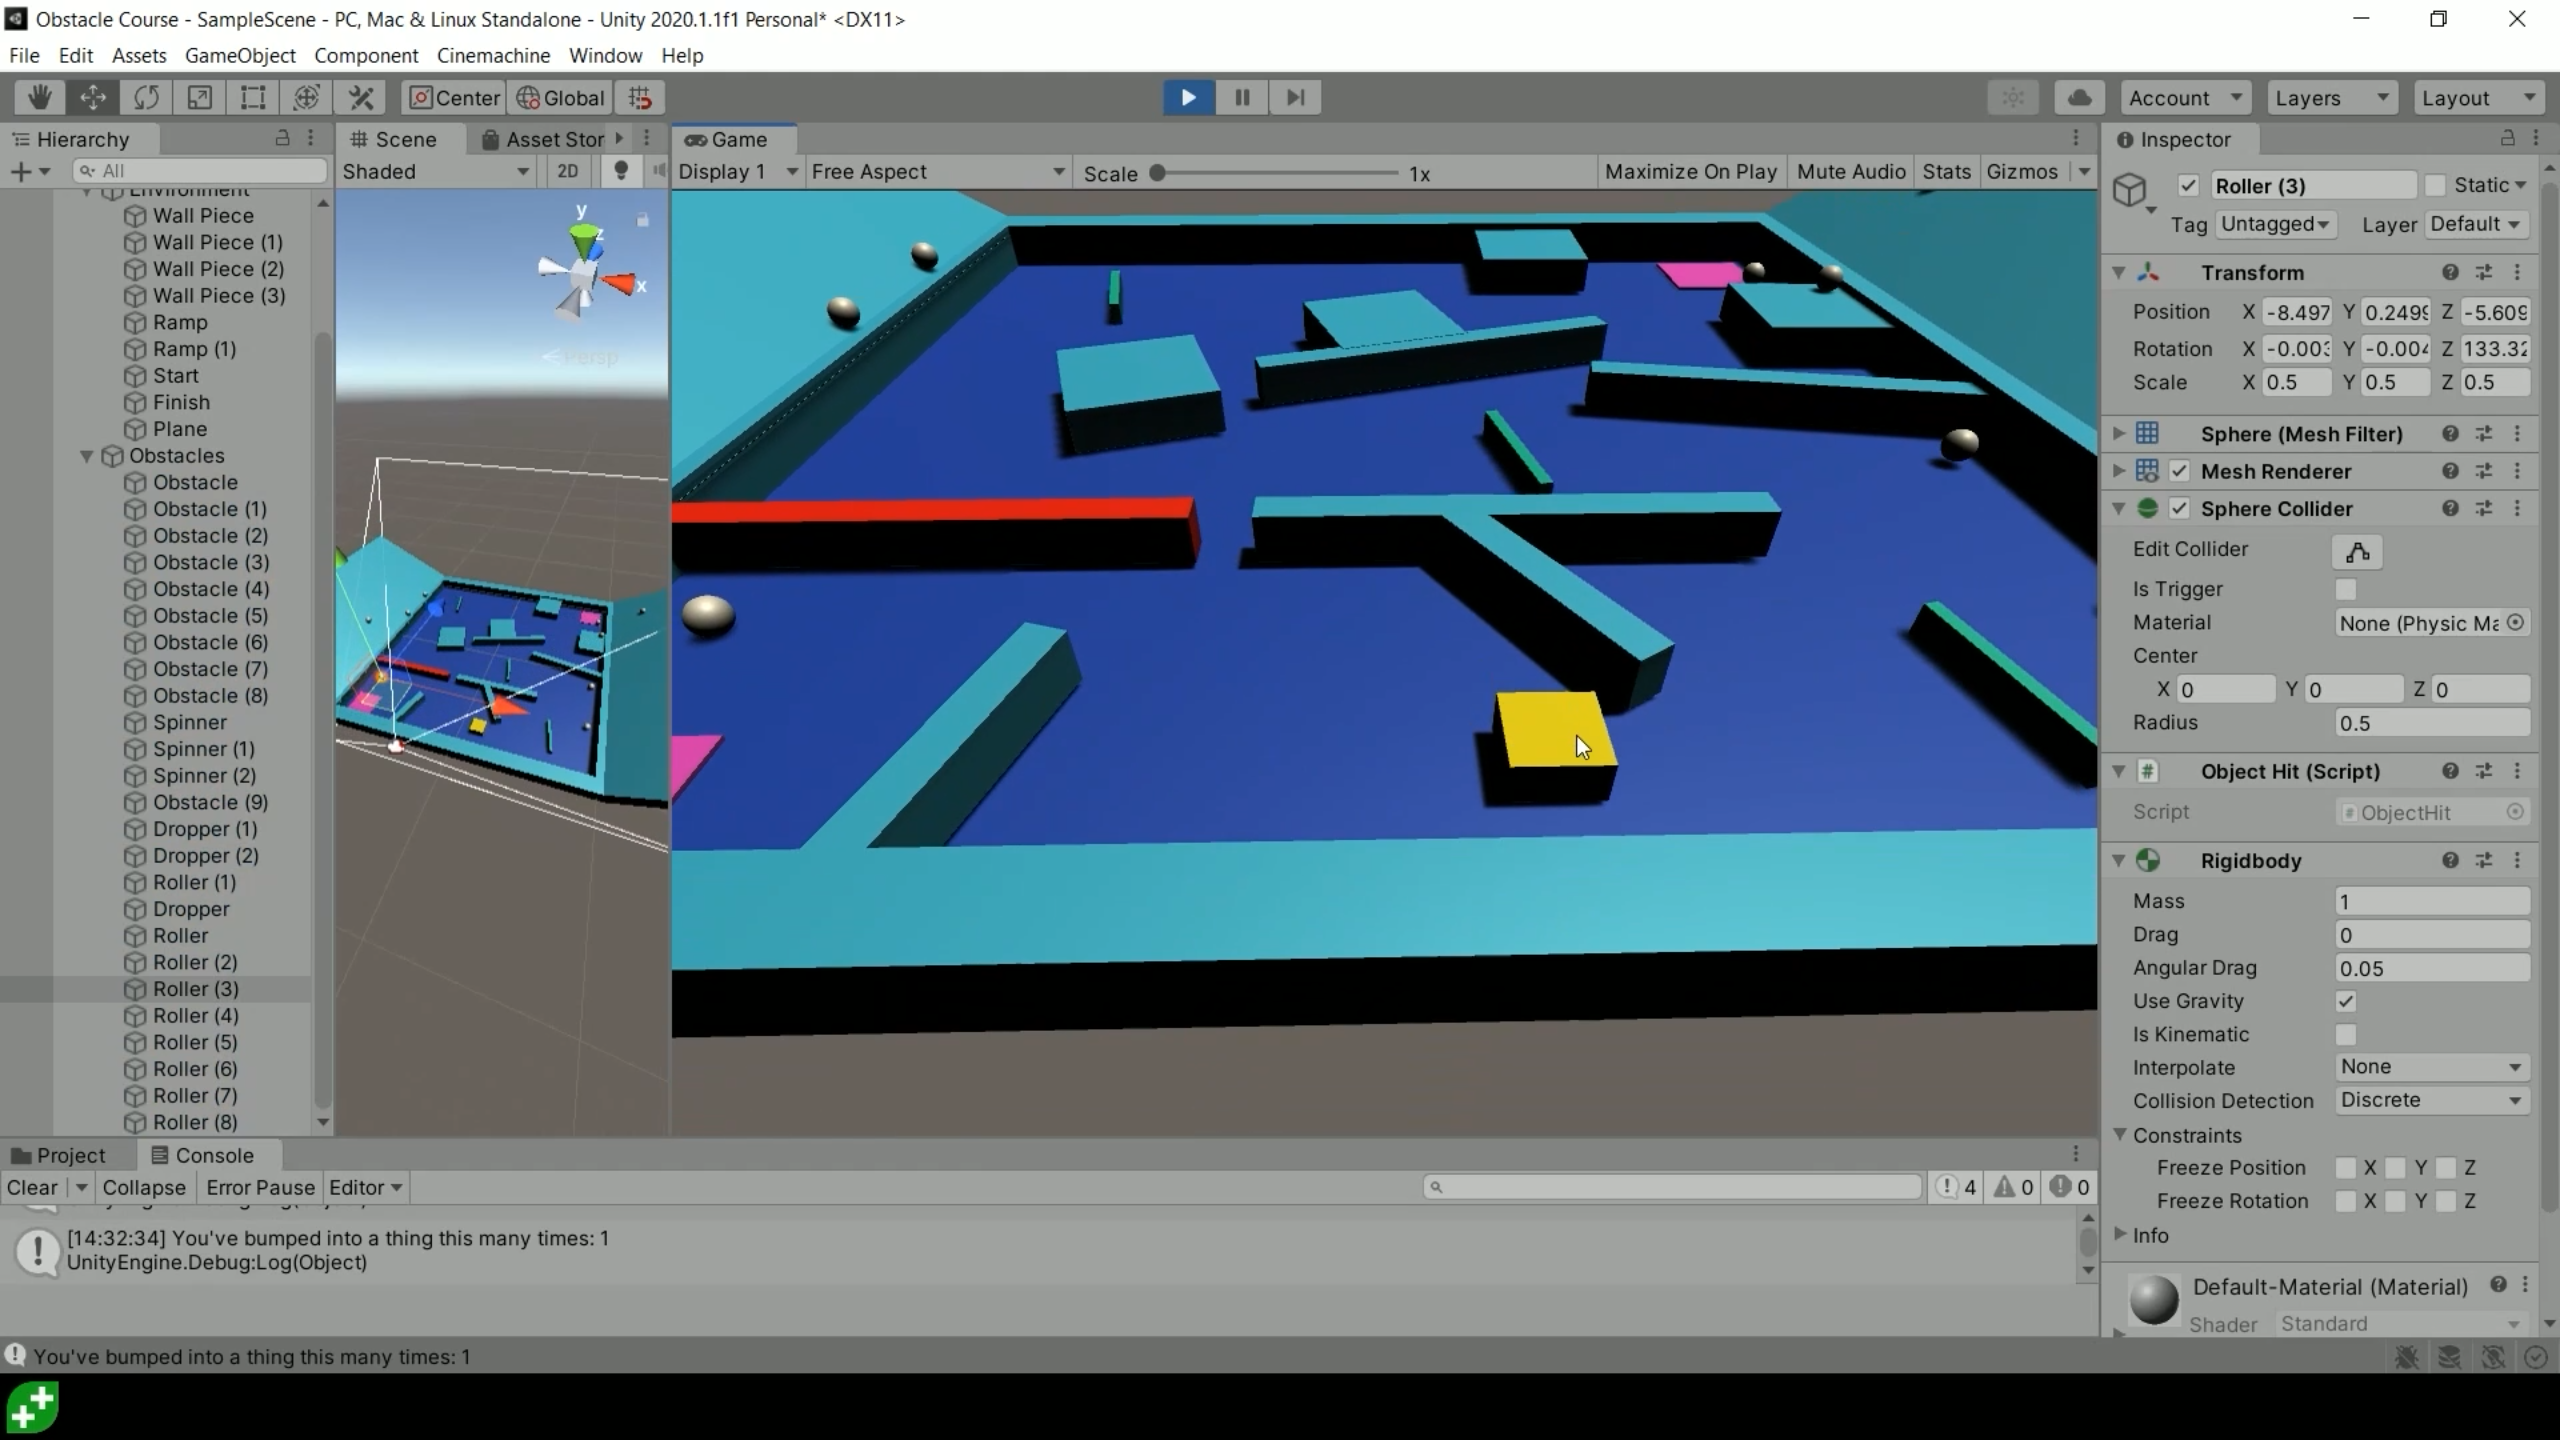 Complete C# Unity Game Developer 3D Online Course - 2020 GameDev.tv Key